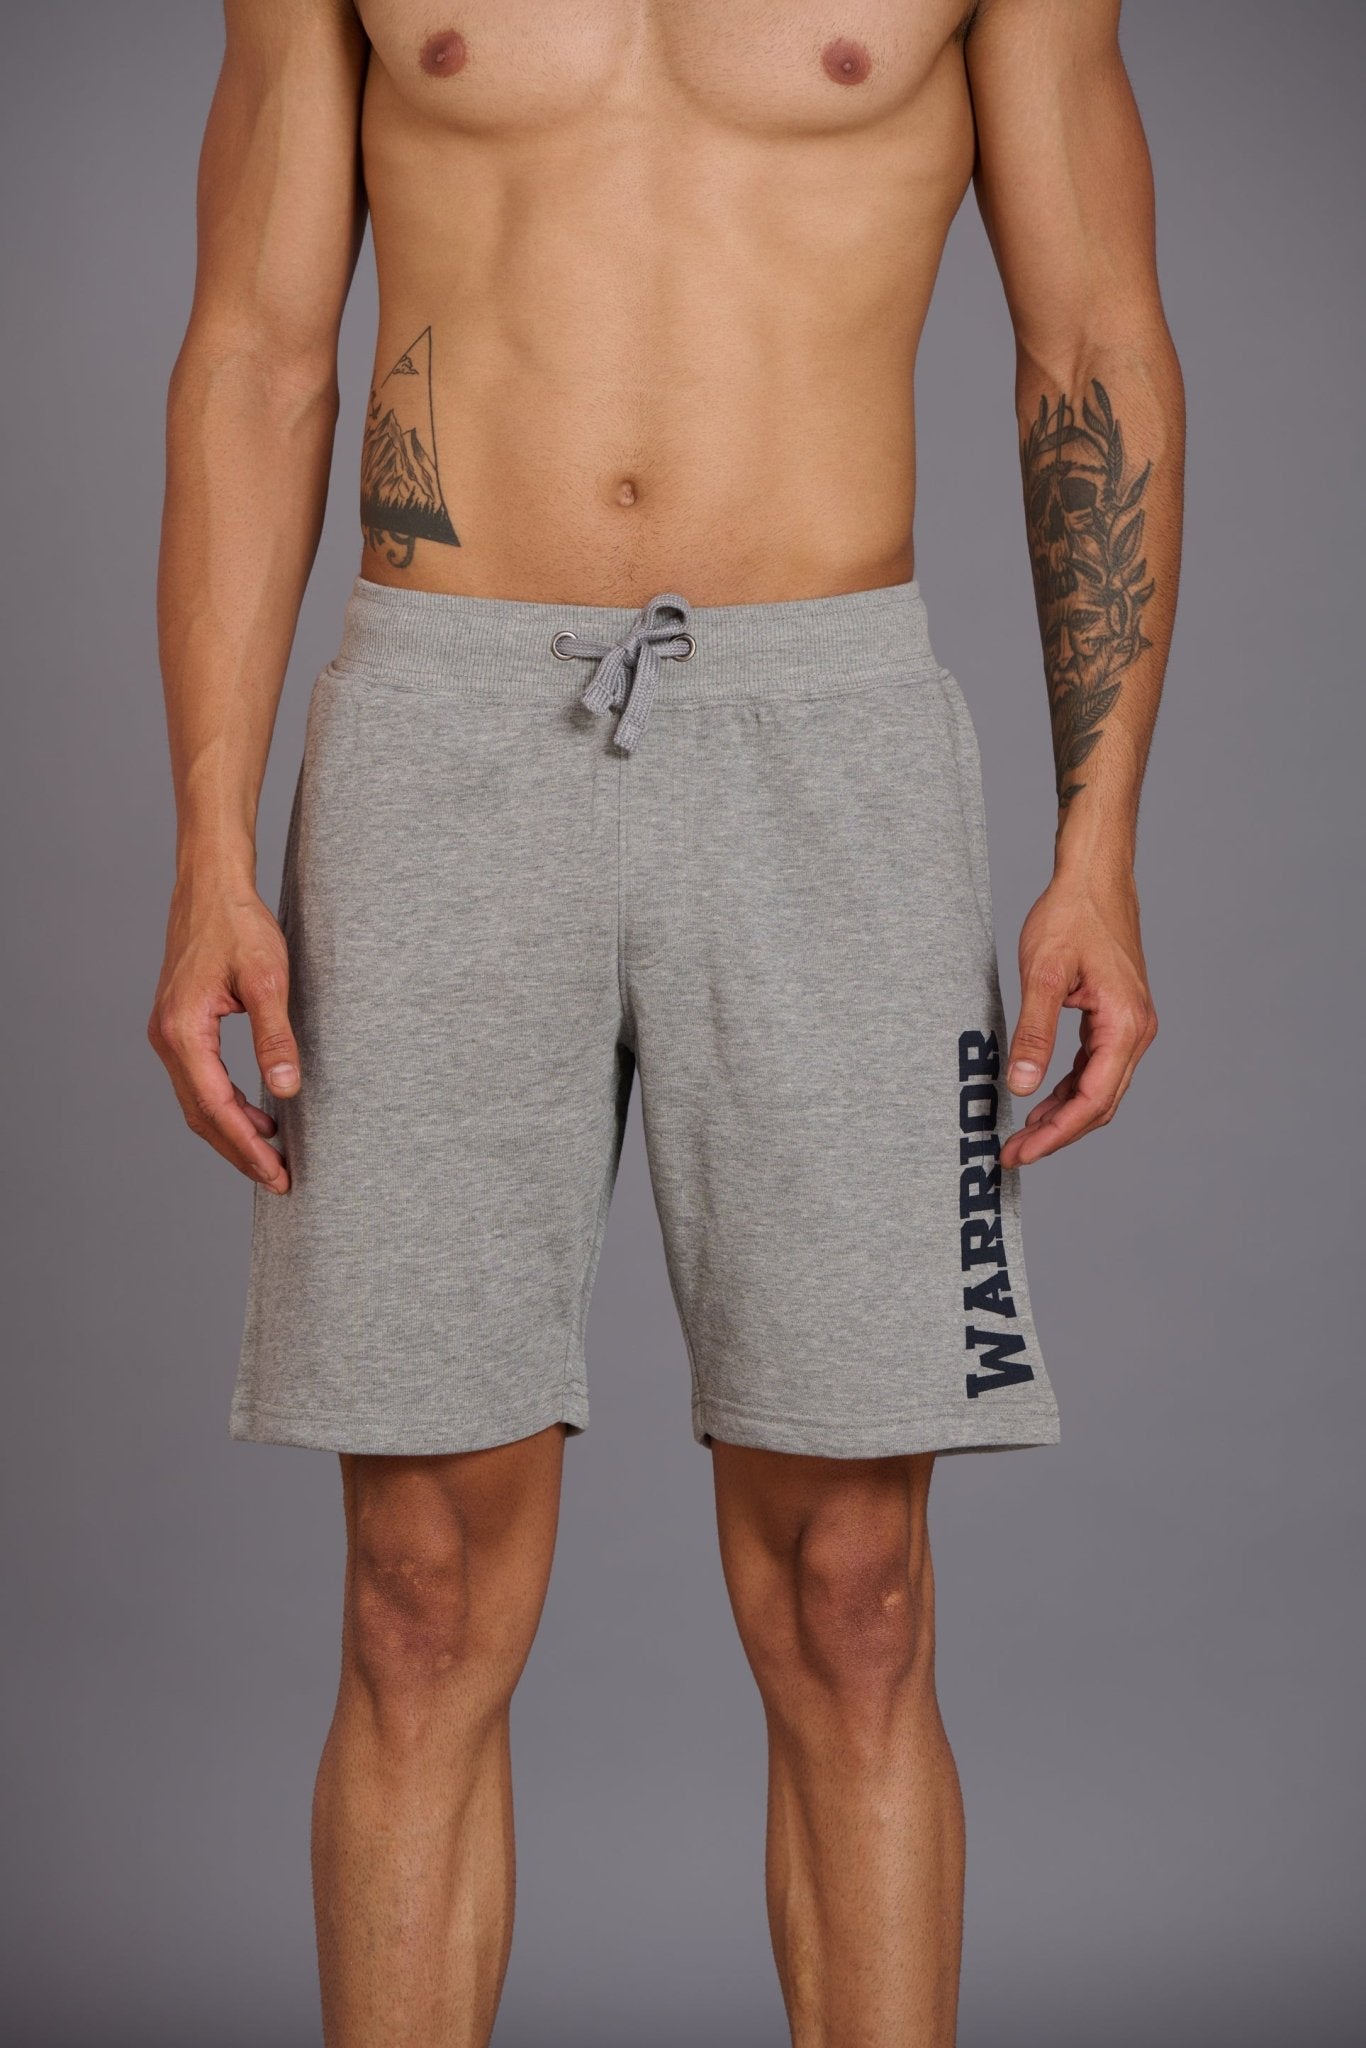 Warrior Printed Grey Shorts for Men - Go Devil